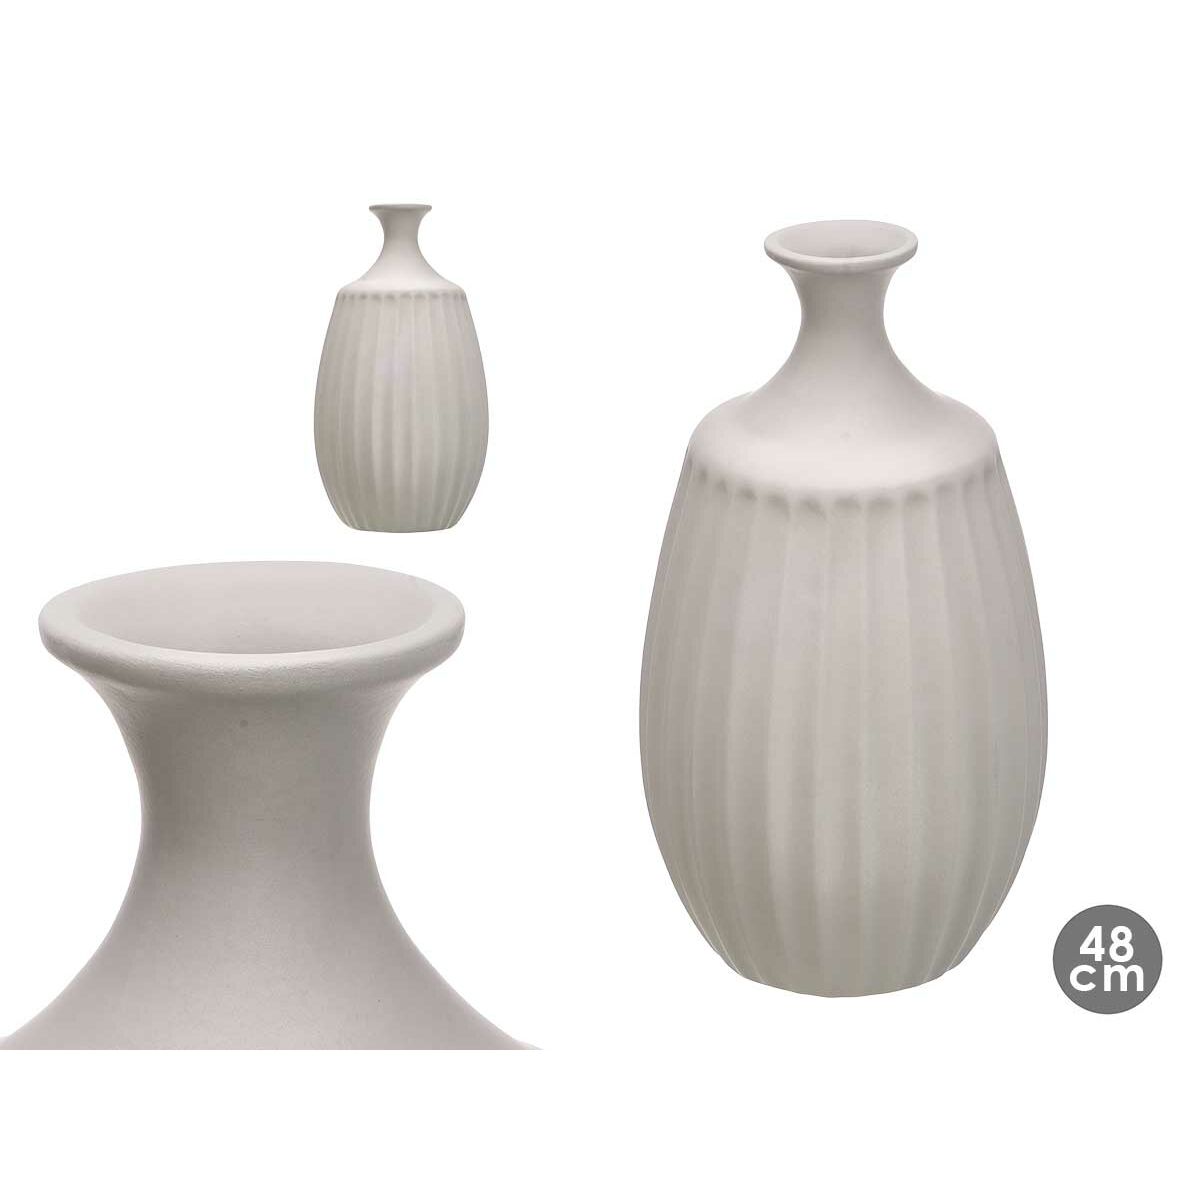 Vase Grau aus Keramik 27 x 48 x 27 cm